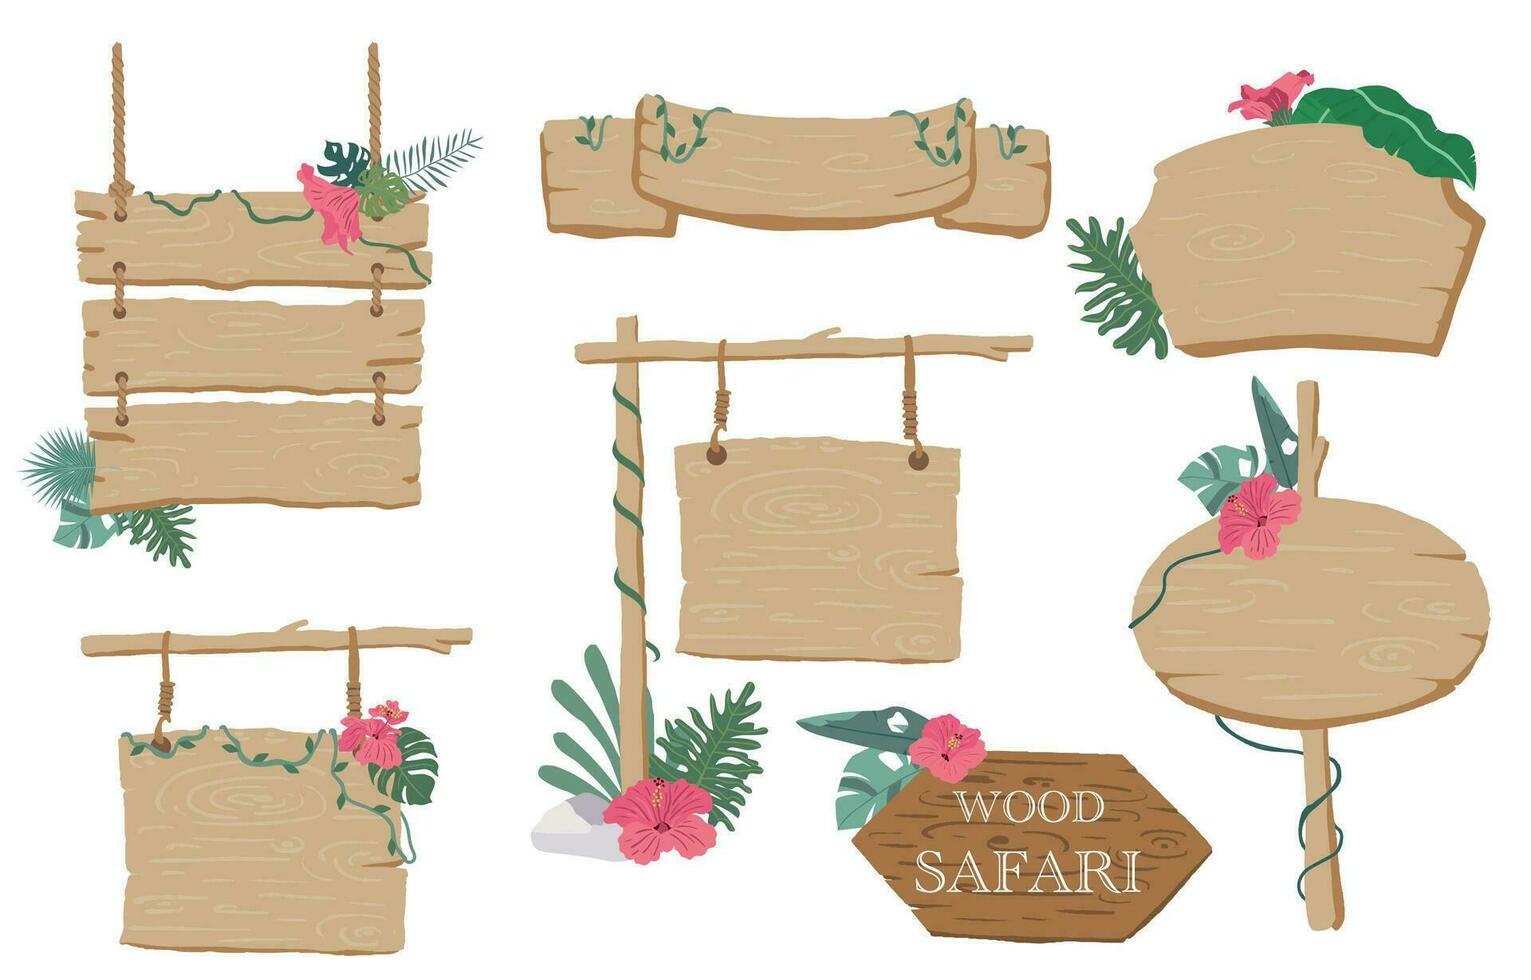 Holz Banner Sammlung von Safari Hintergrund set.editable Vektor Illustration zum Geburtstag Einladung, Postkarte und Aufkleber